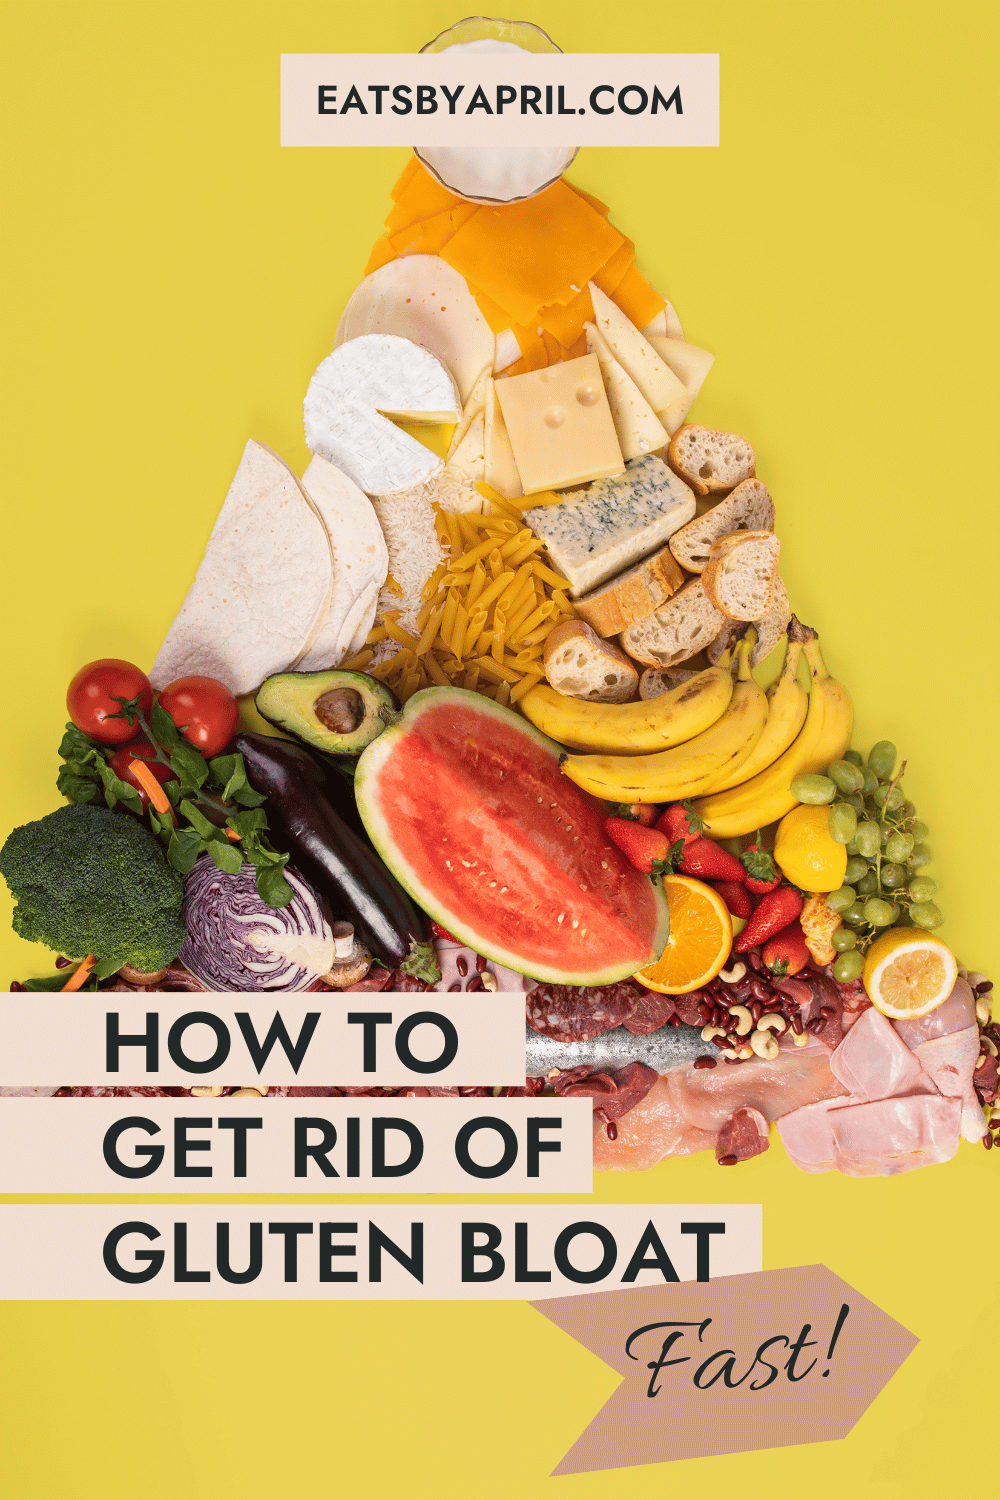 Foods to get rid of gluten bloat.